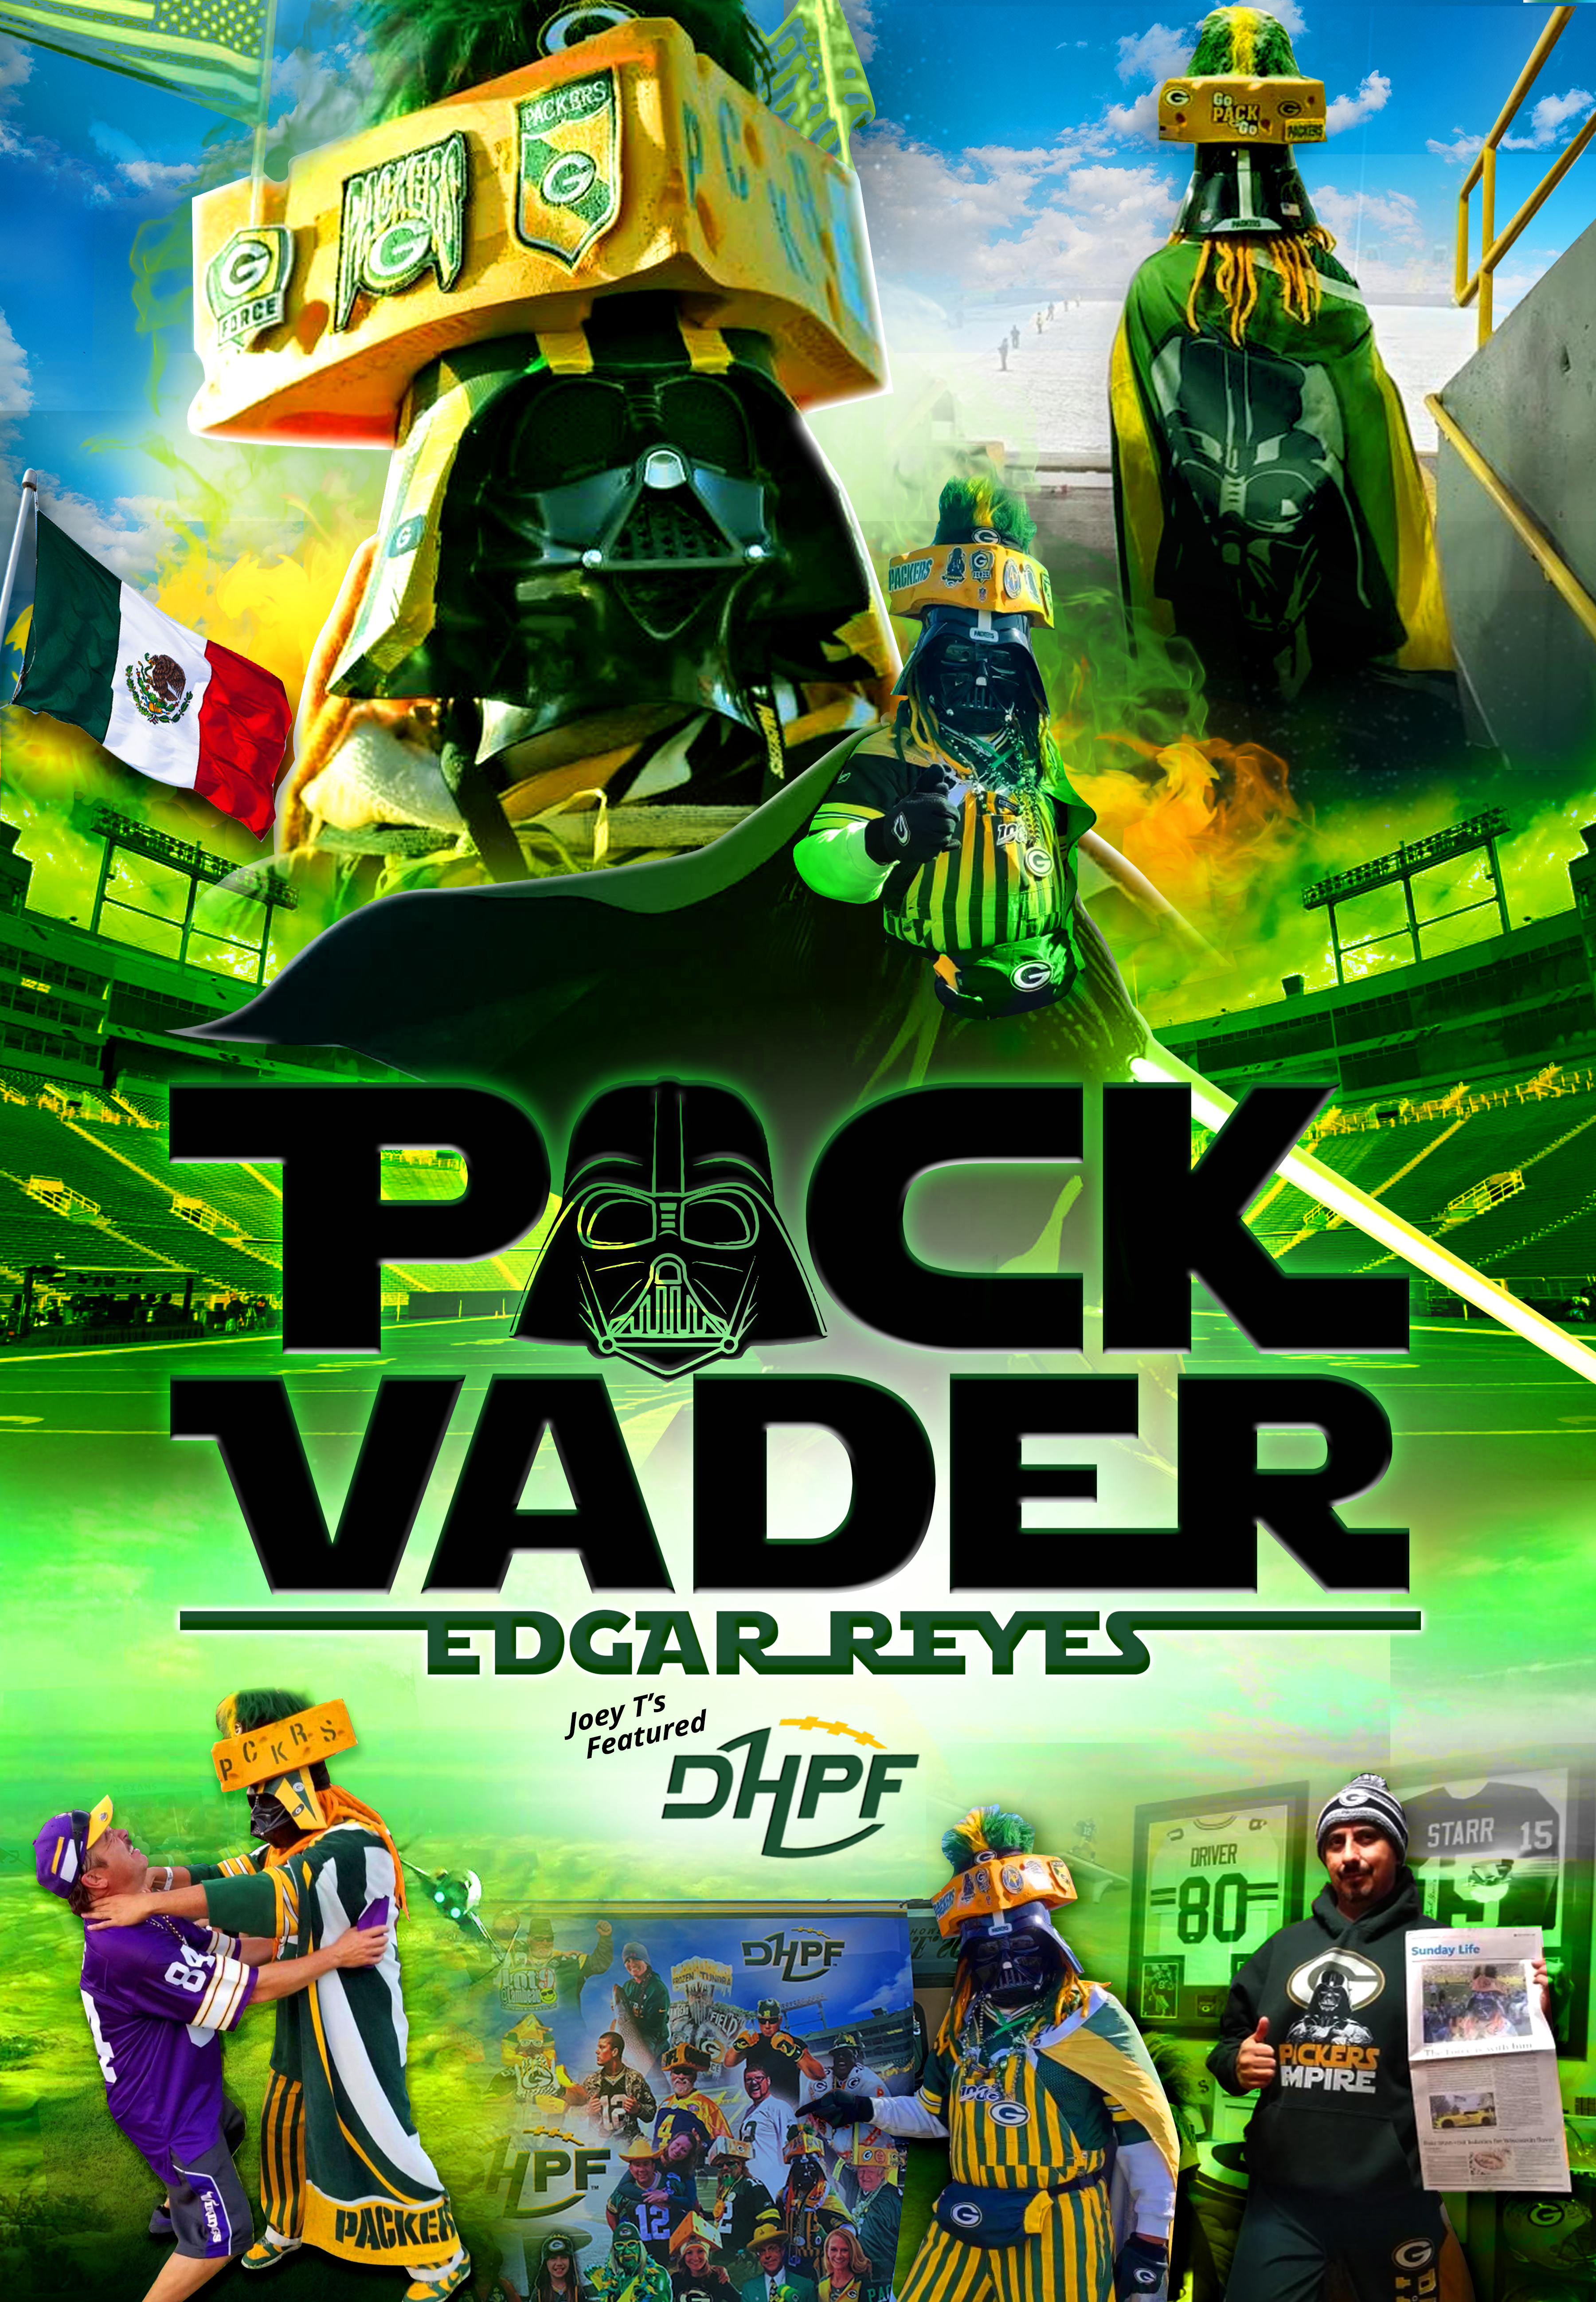 Edgar Reyes Die Hard Packer Fan of the Month